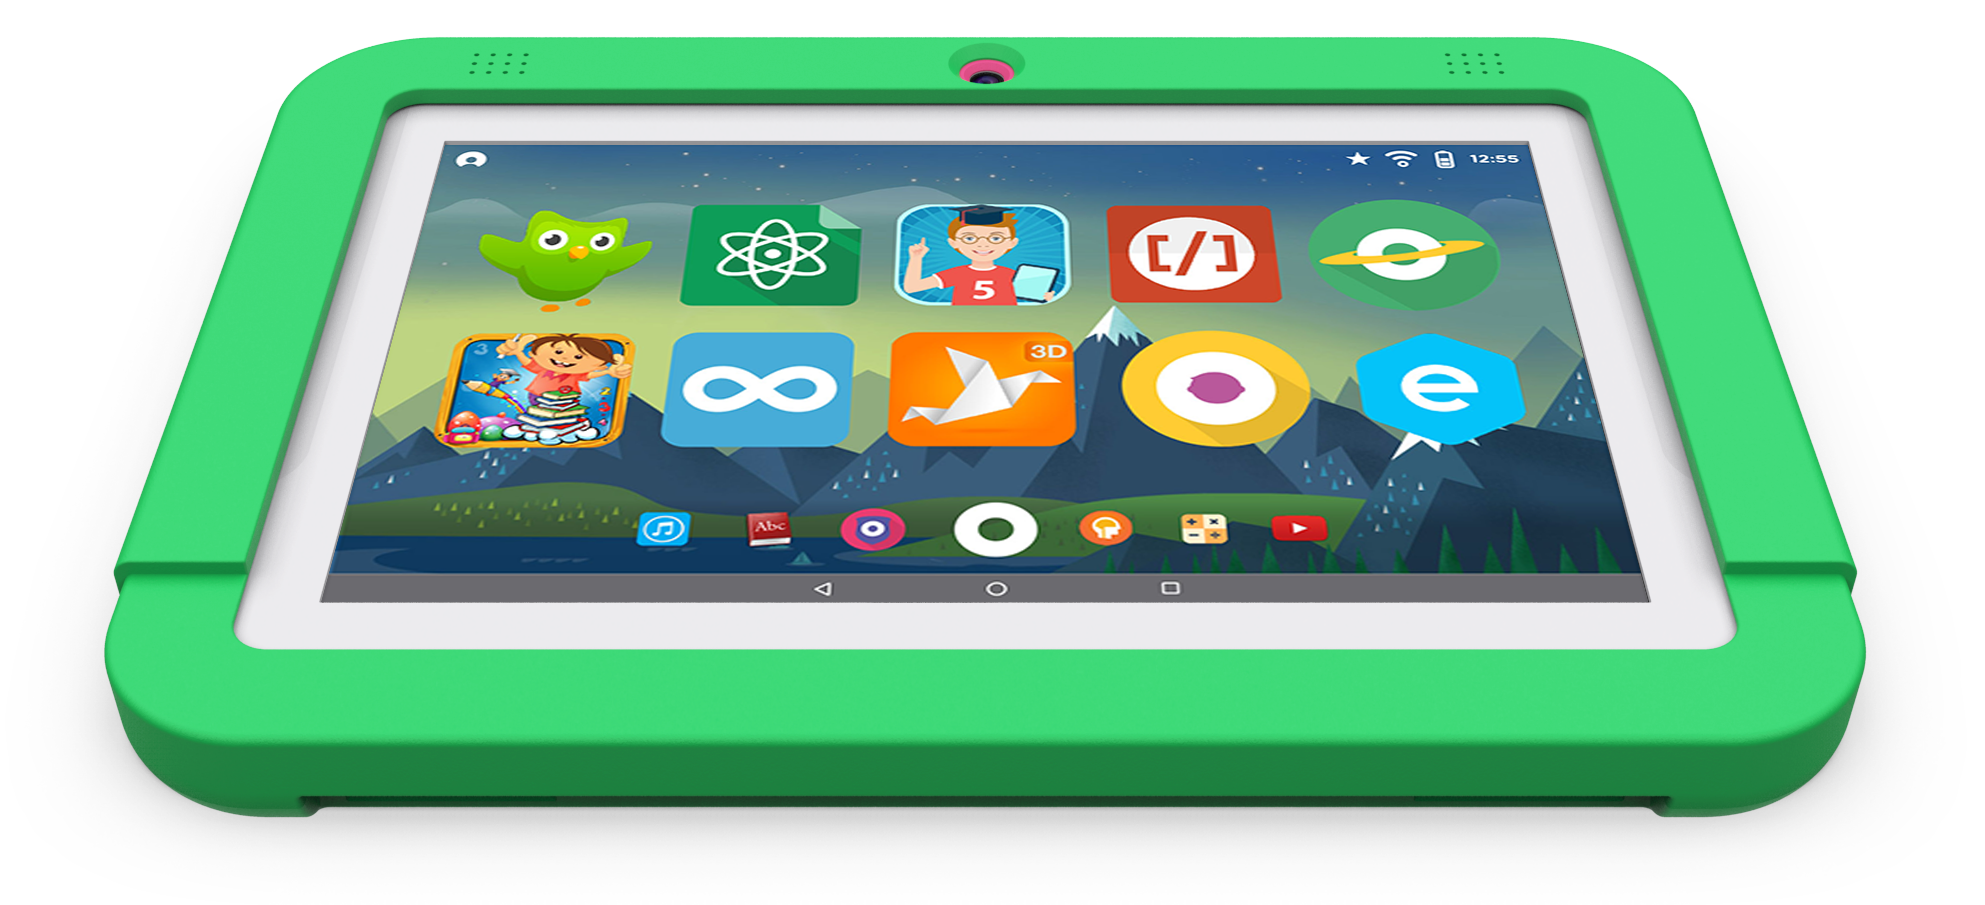 Детский планшет Cube. Kids Tablet планшет. Детская оболочка для андроид планшета. Планшеты с детской оболочкой. Планшет андроид ребенку